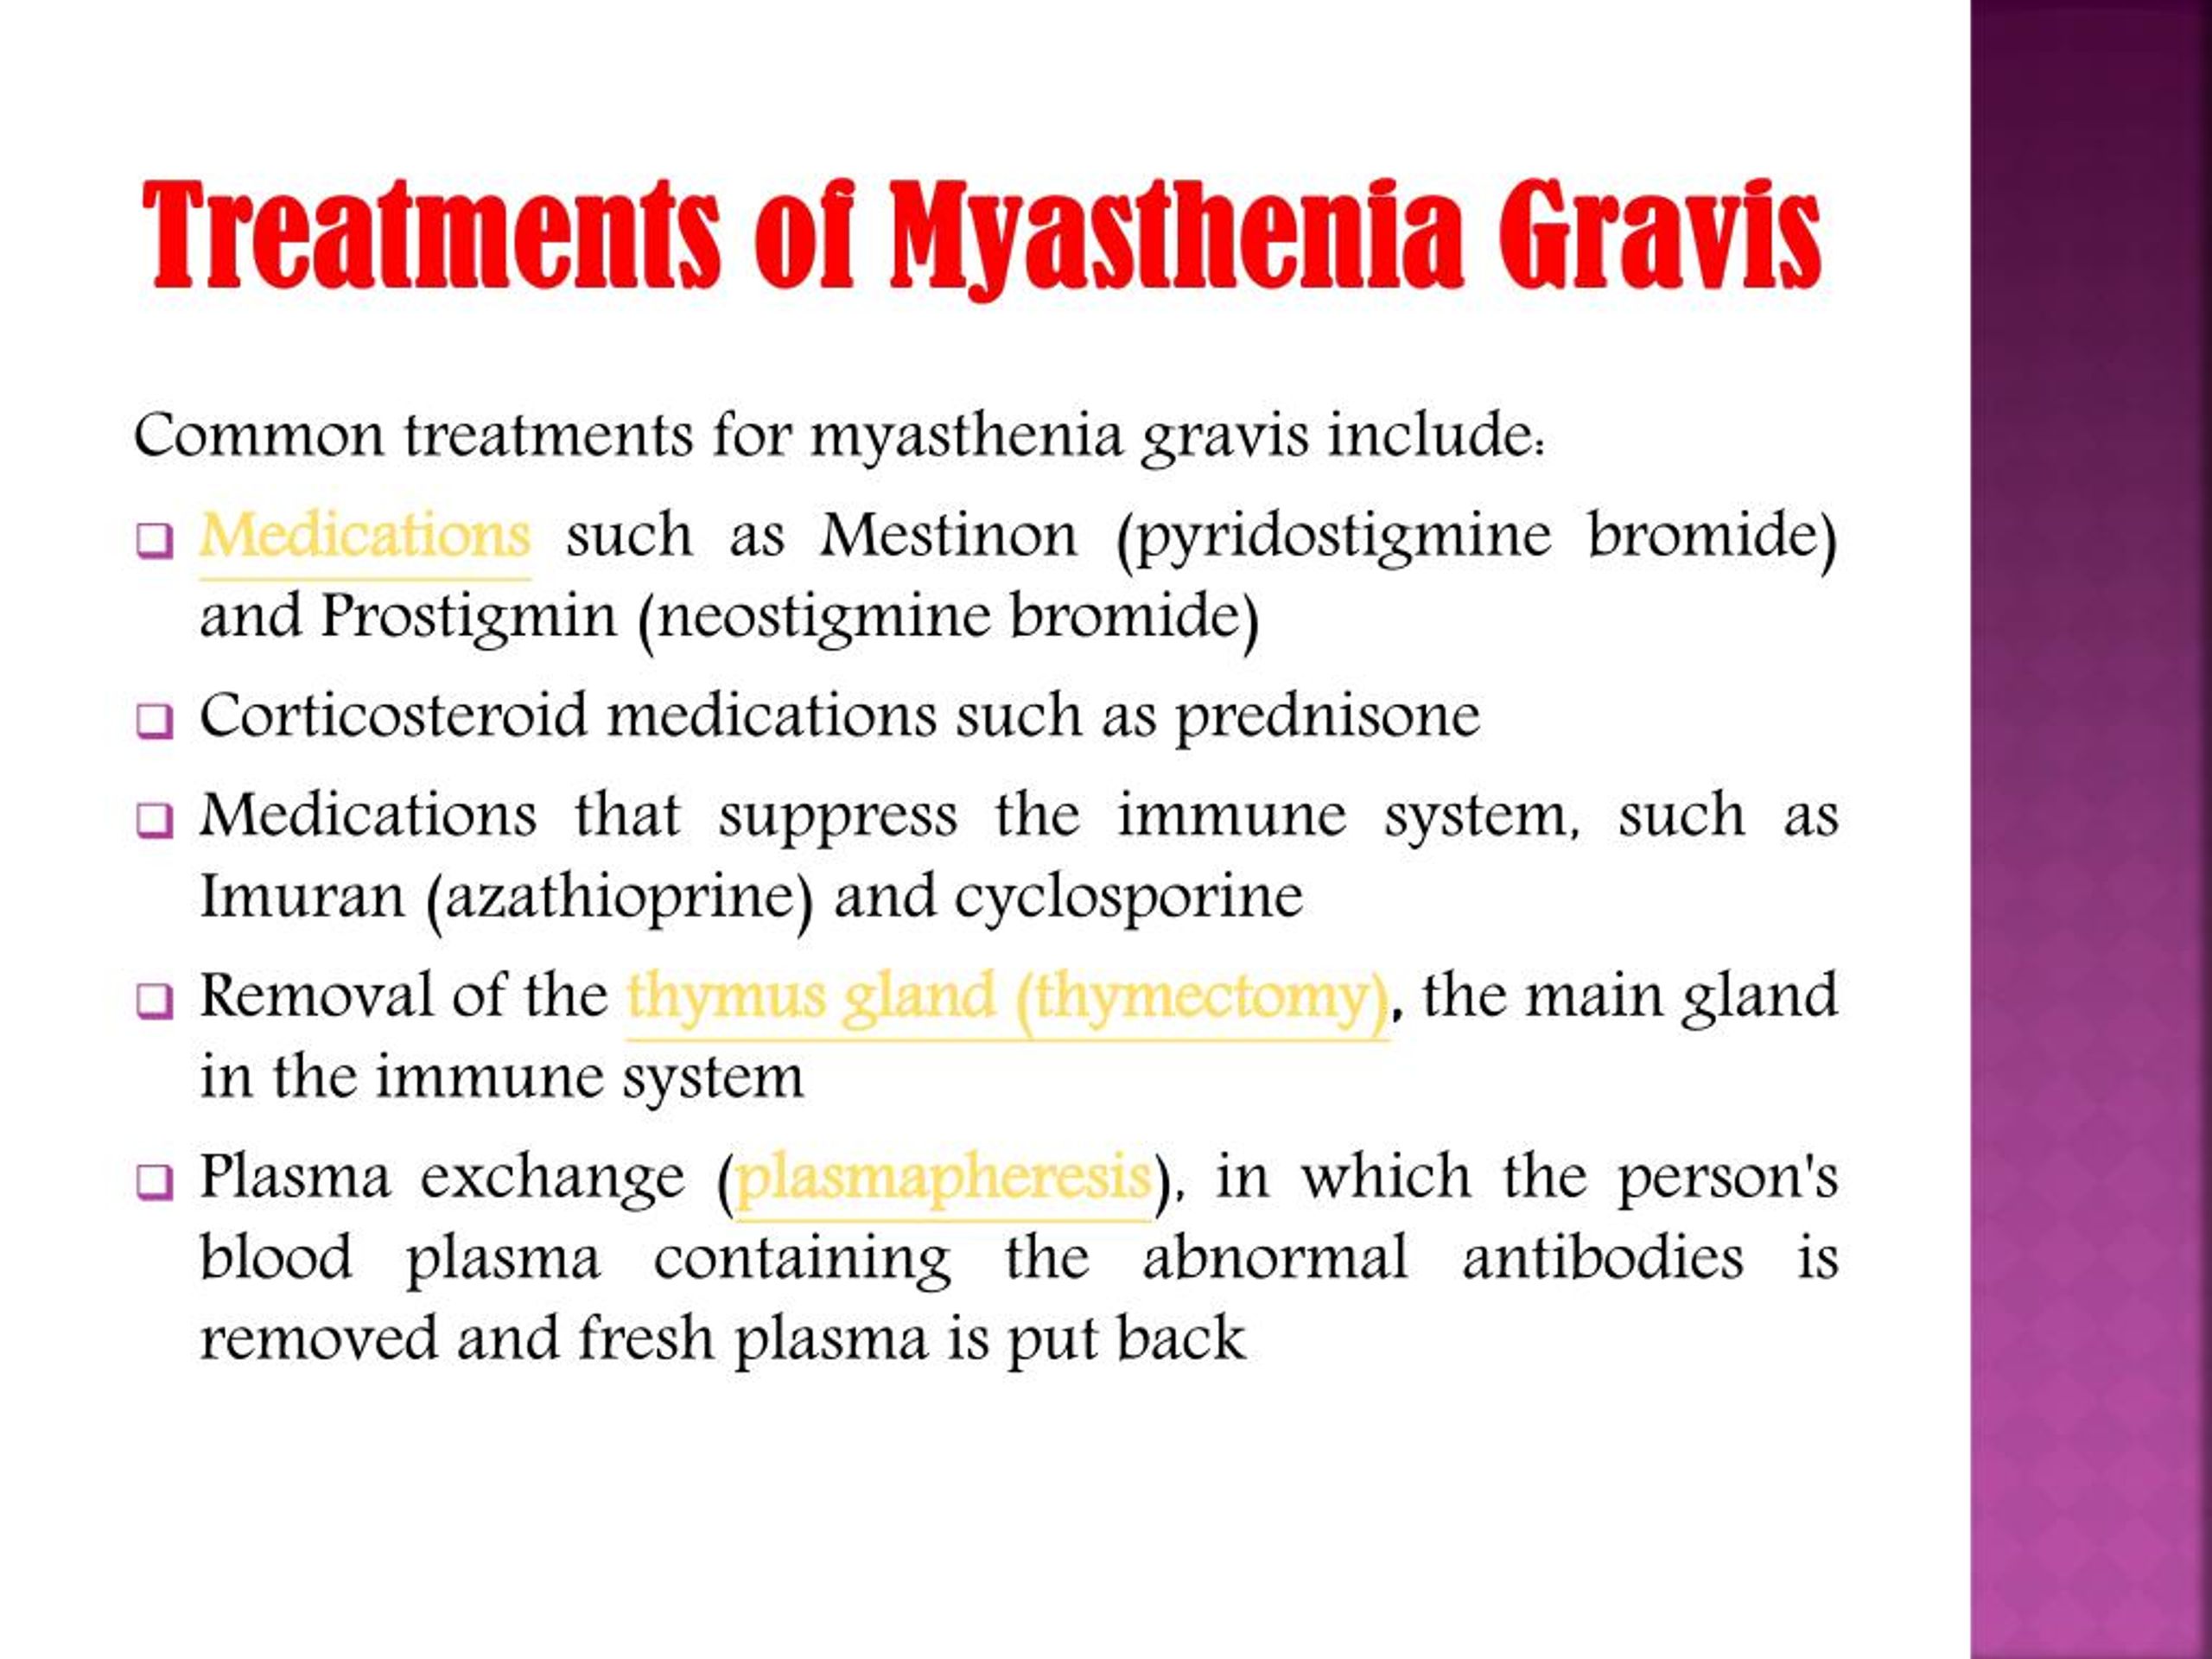 how does prednisone help myasthenia gravis